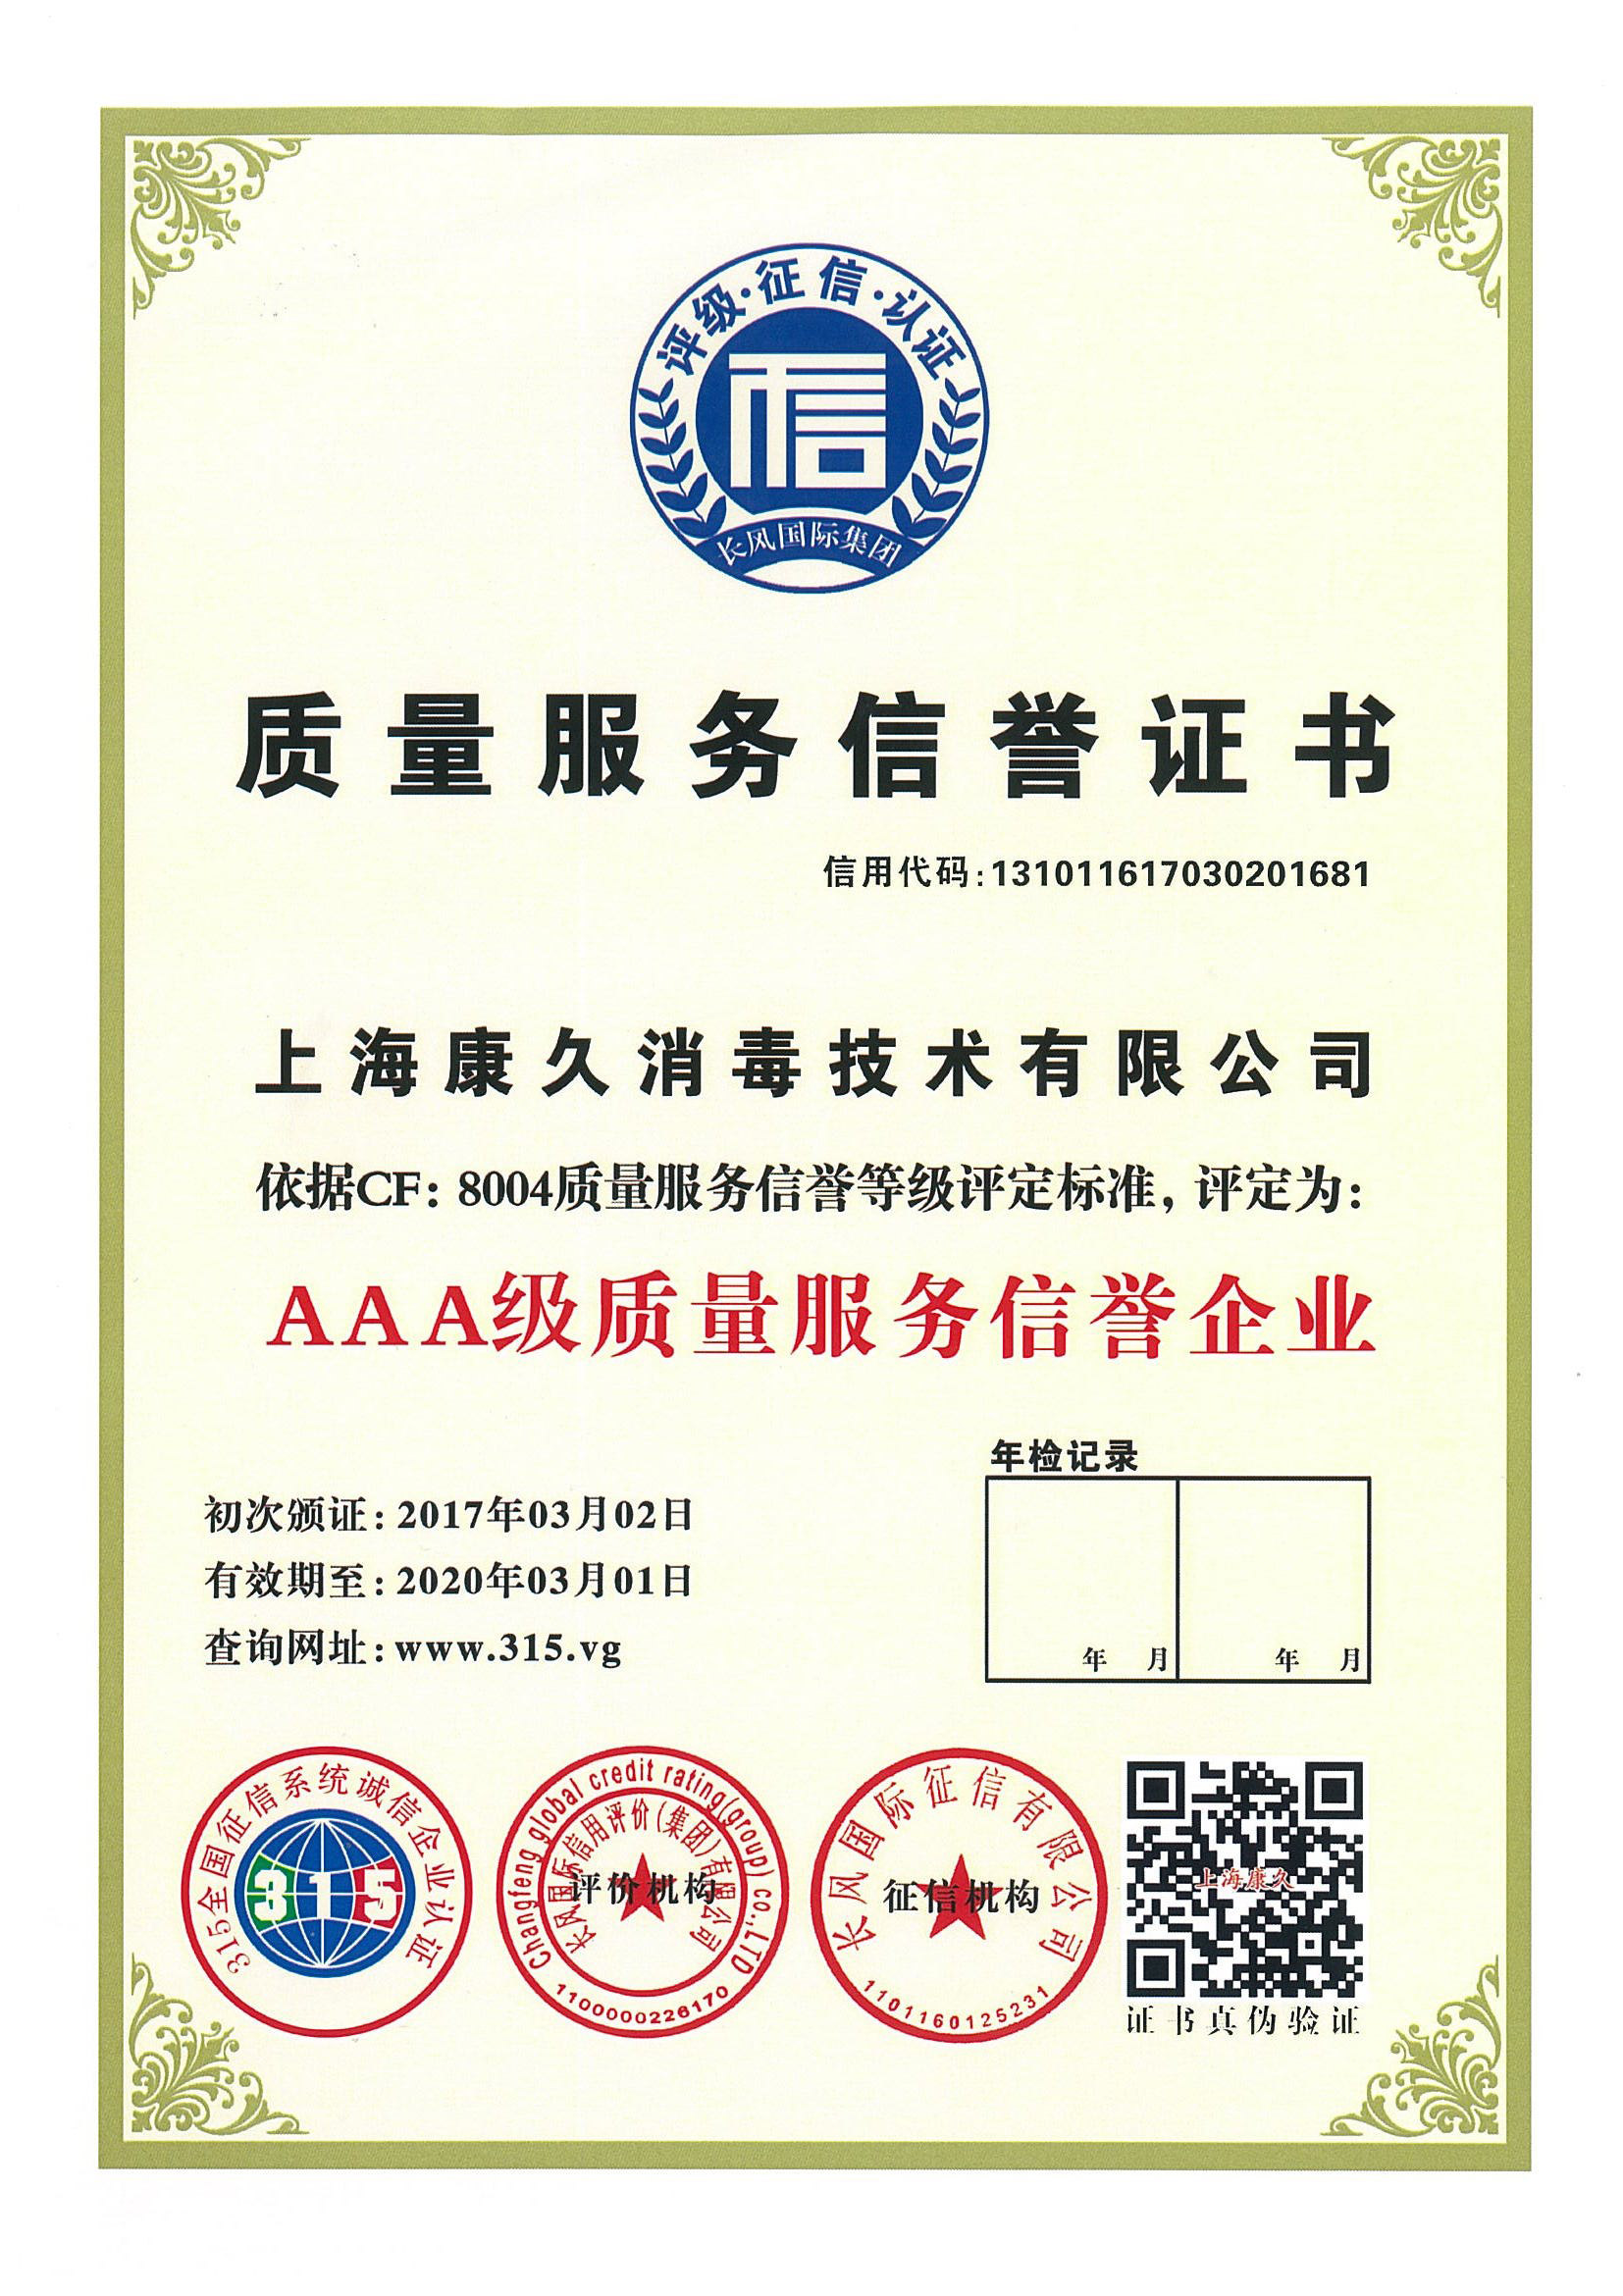 “晋城质量服务信誉证书